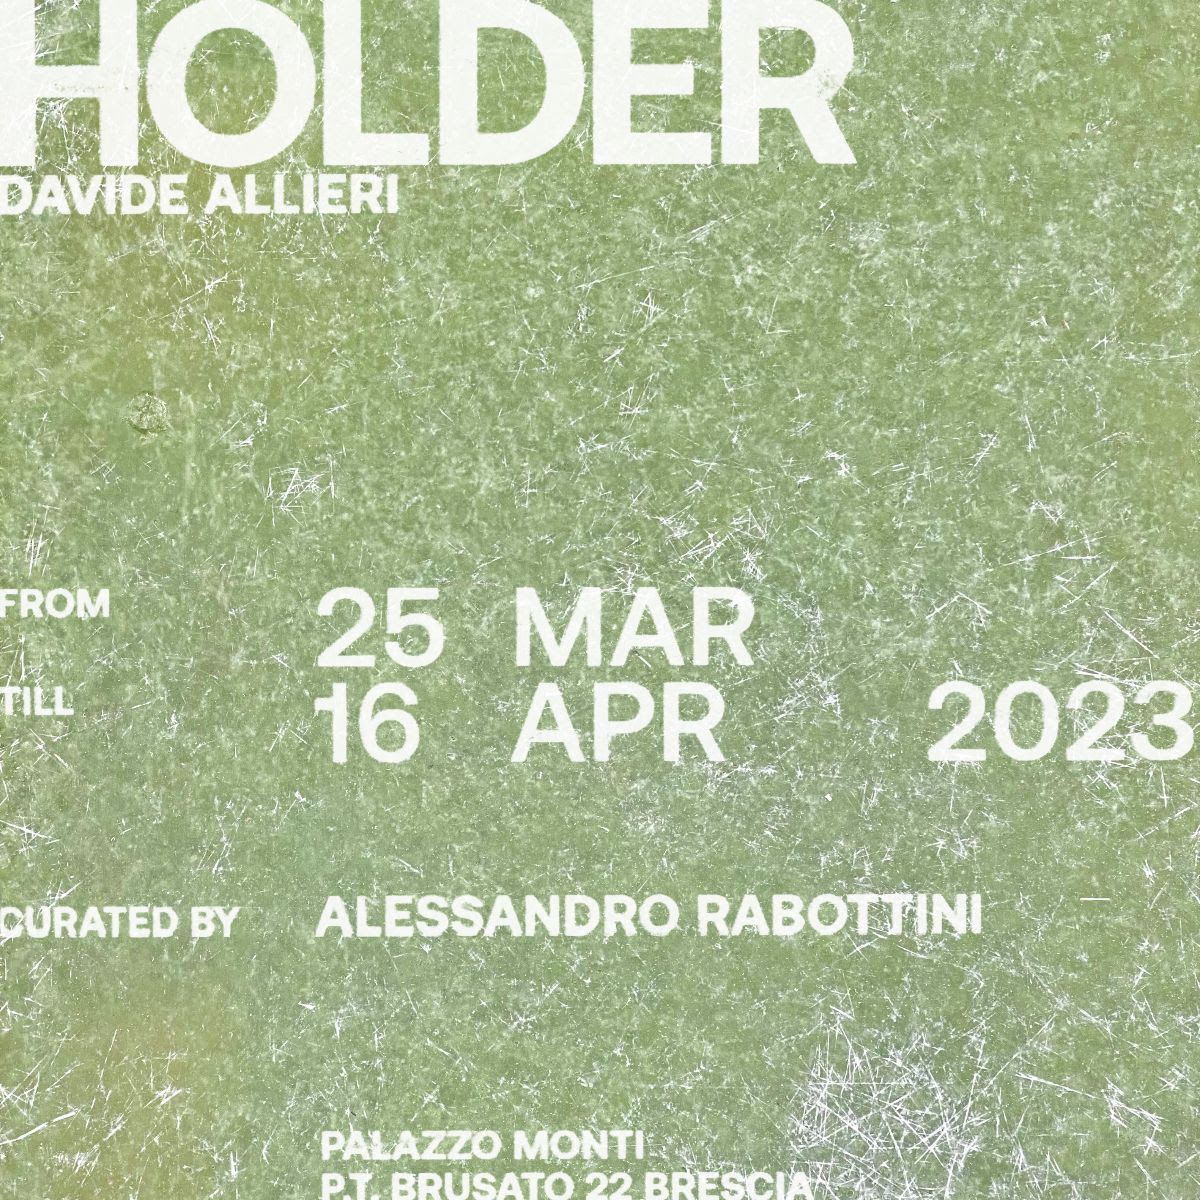 Davide Allieri – Holder